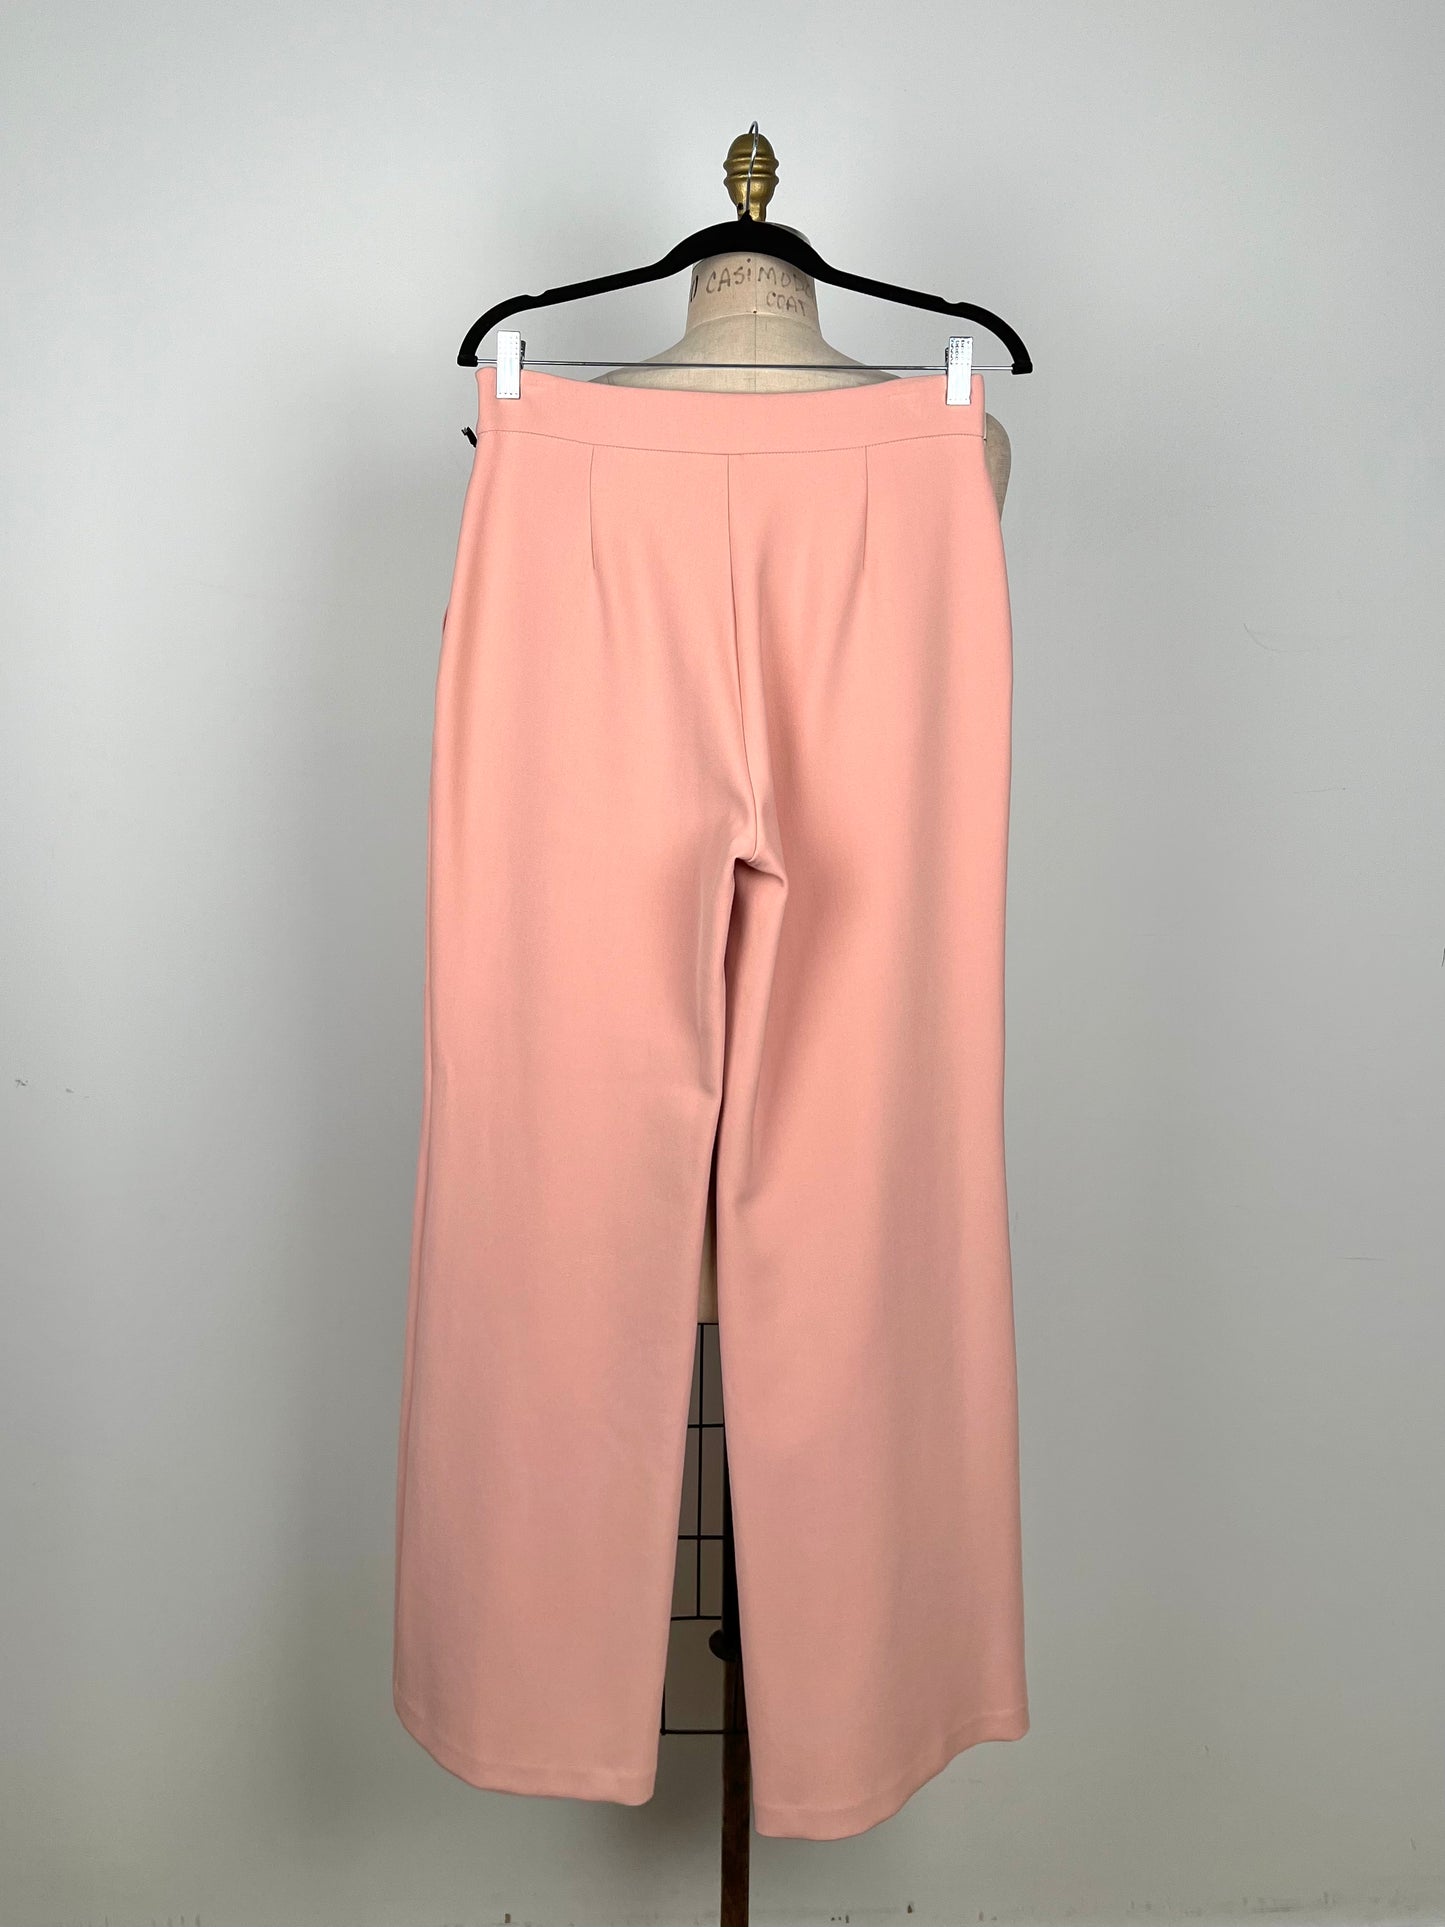 Pantalon taille haute à jambe large rose pâle (8)